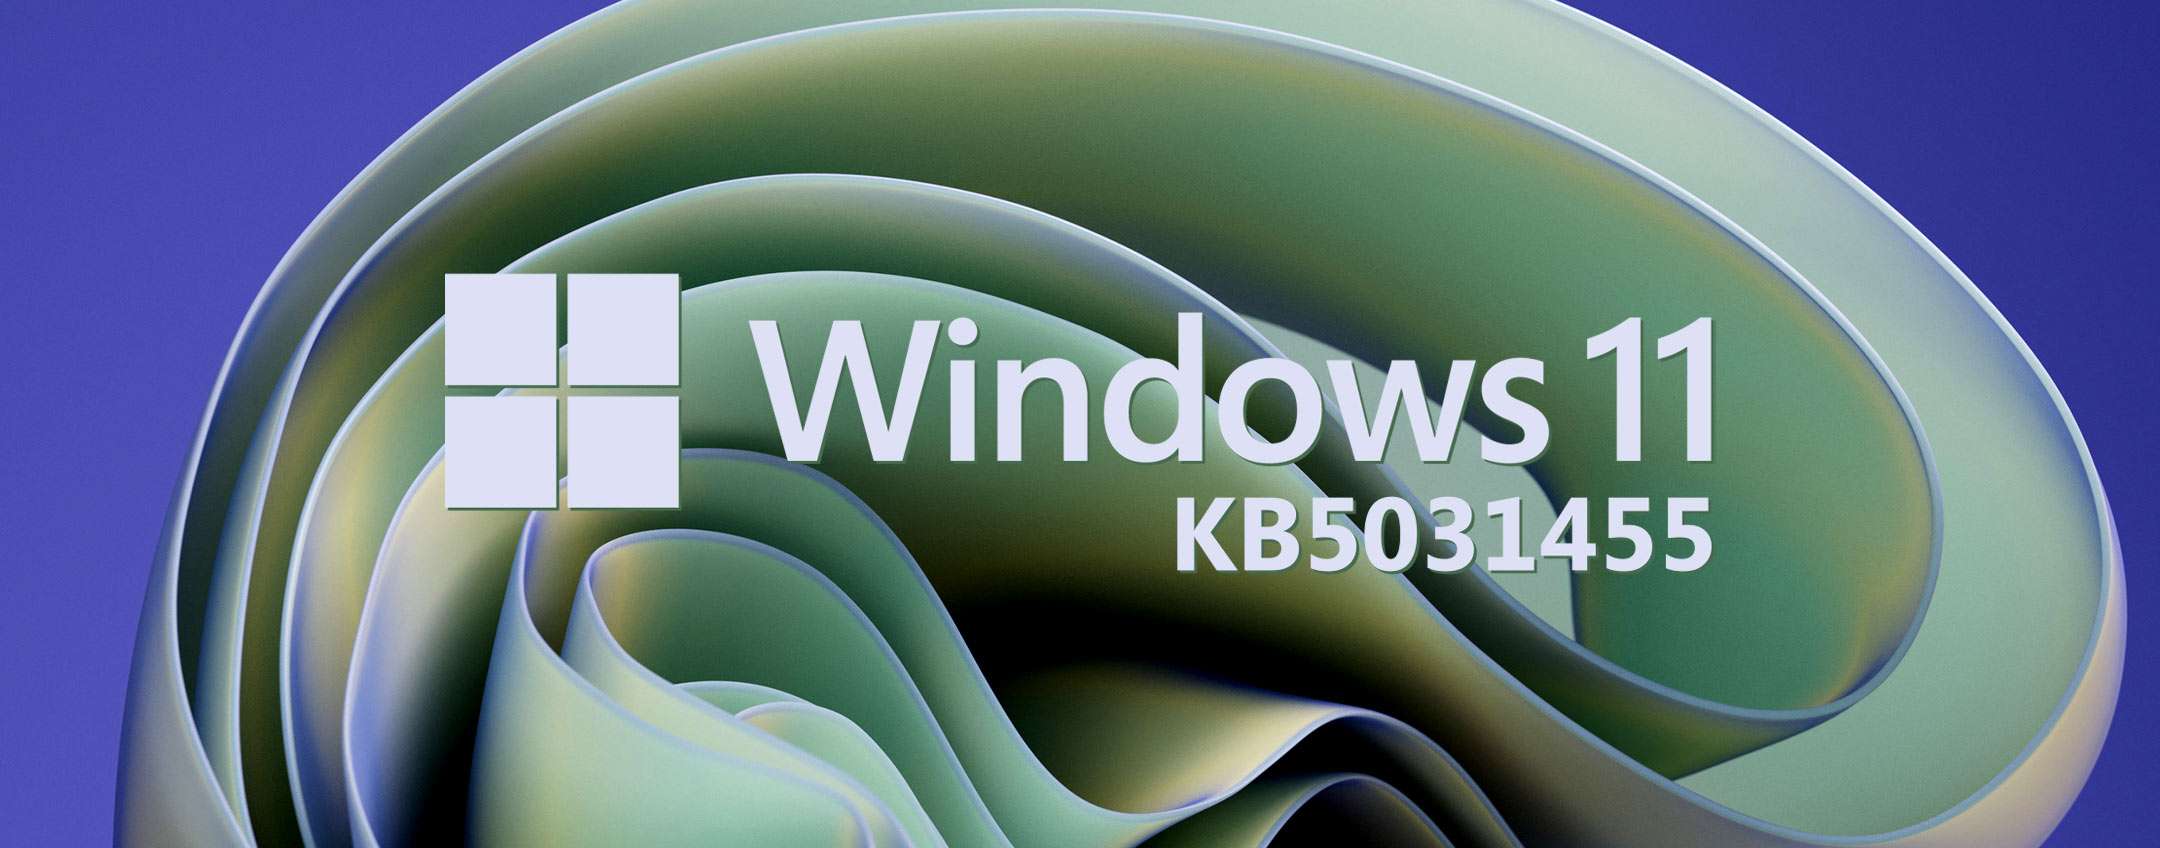 Descargar Windows 11 KB5031455: Novedades